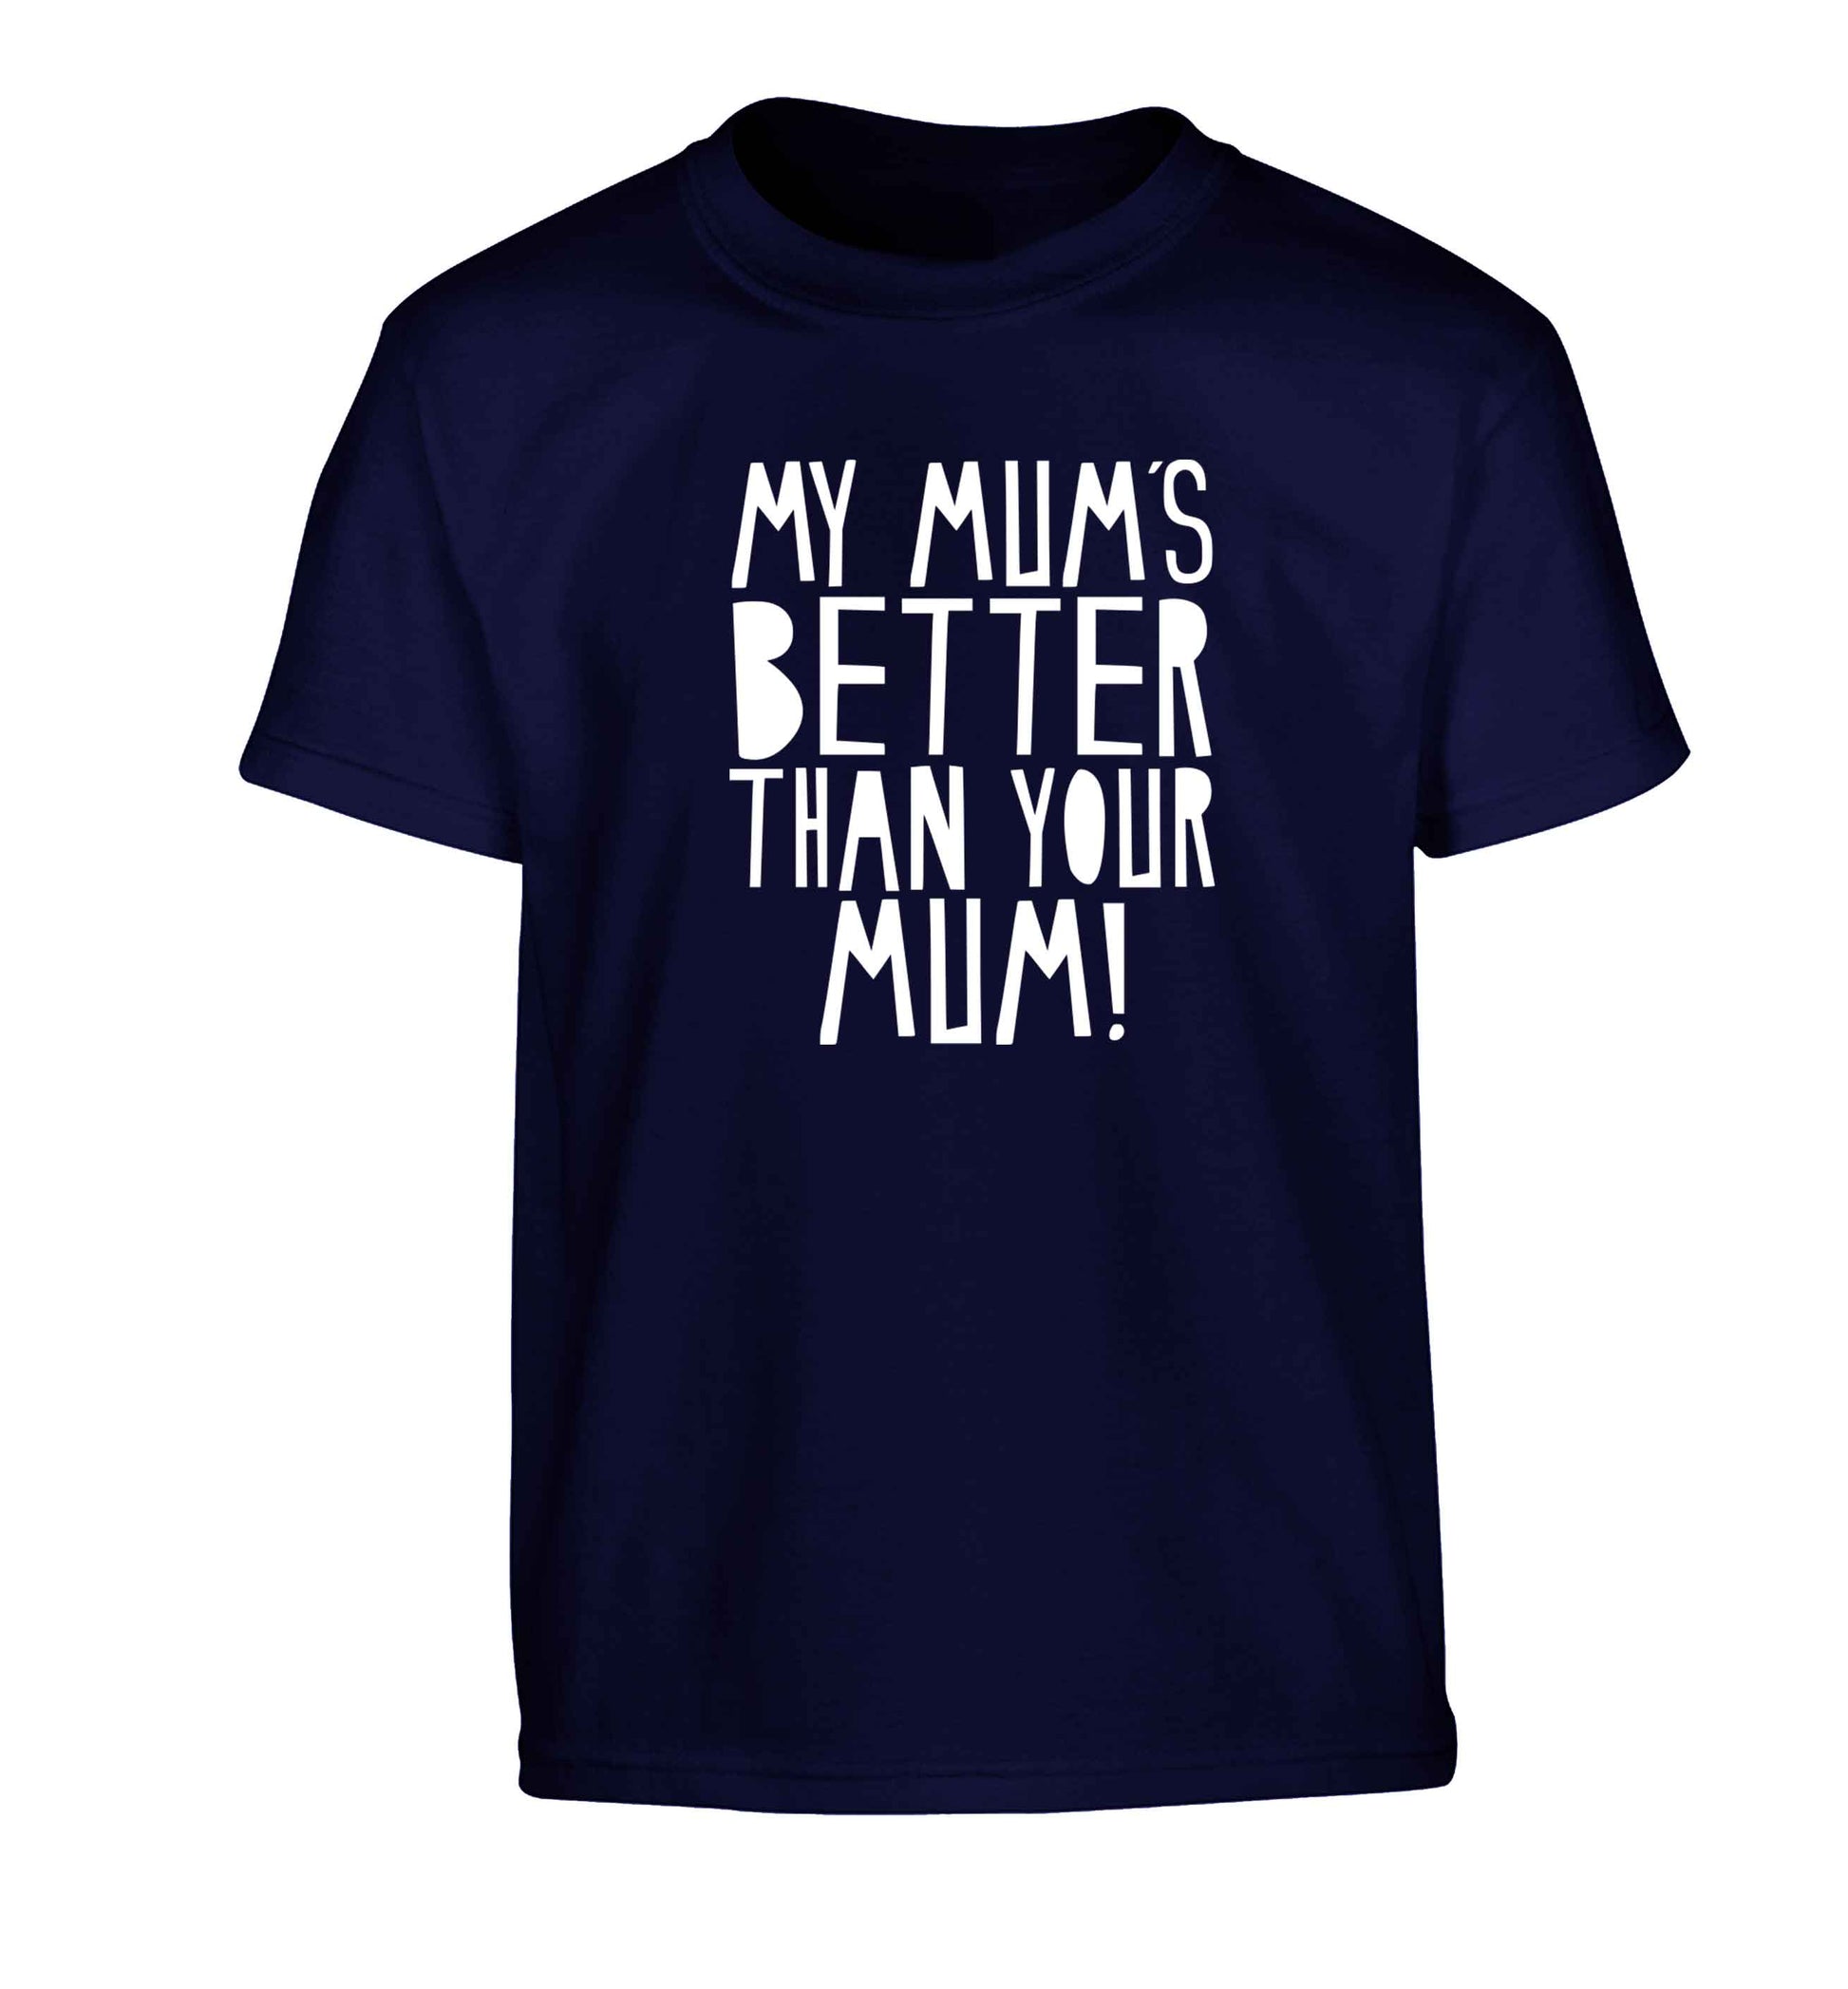 My mum's better than your mum Children's navy Tshirt 12-13 Years